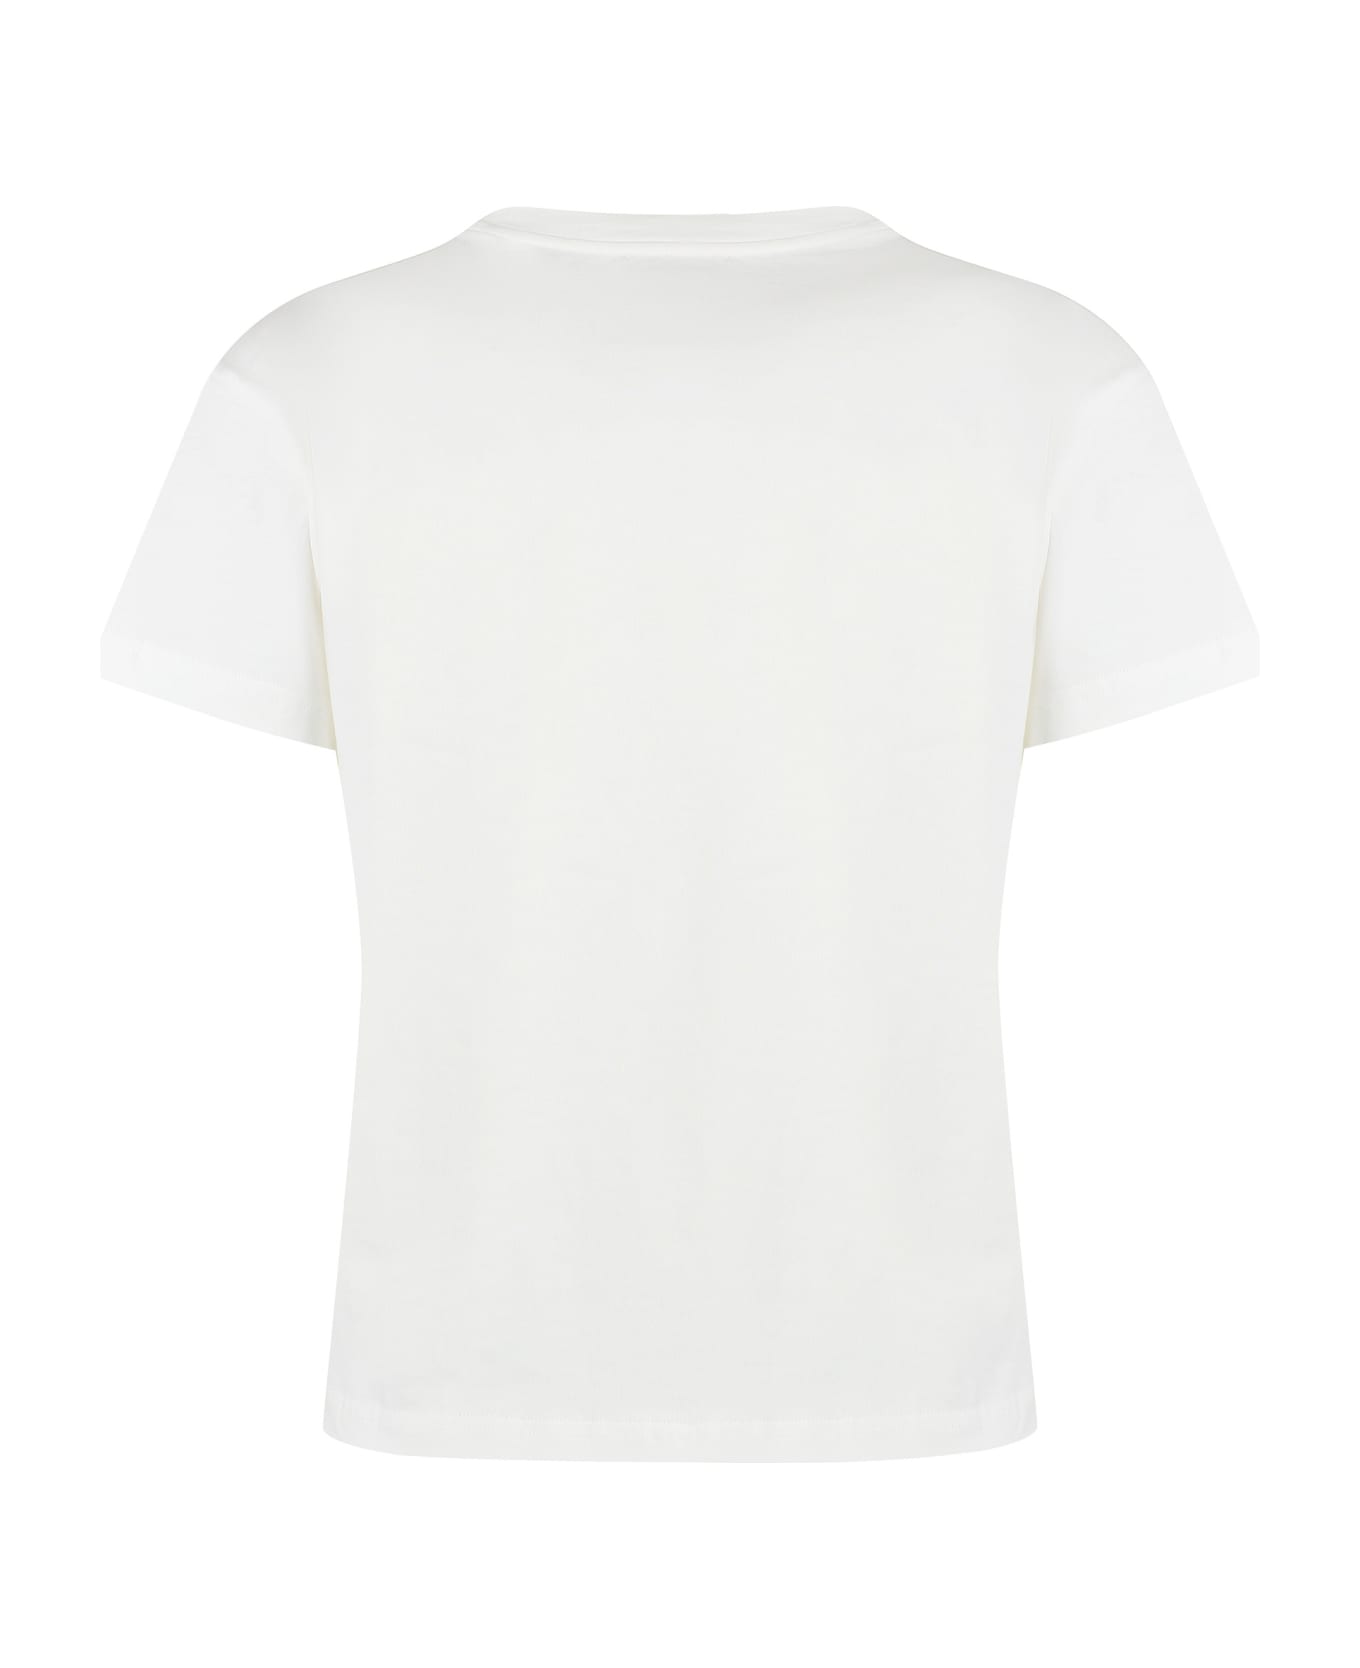 A.P.C. Cotton Crew-neck T-shirt - White Tシャツ